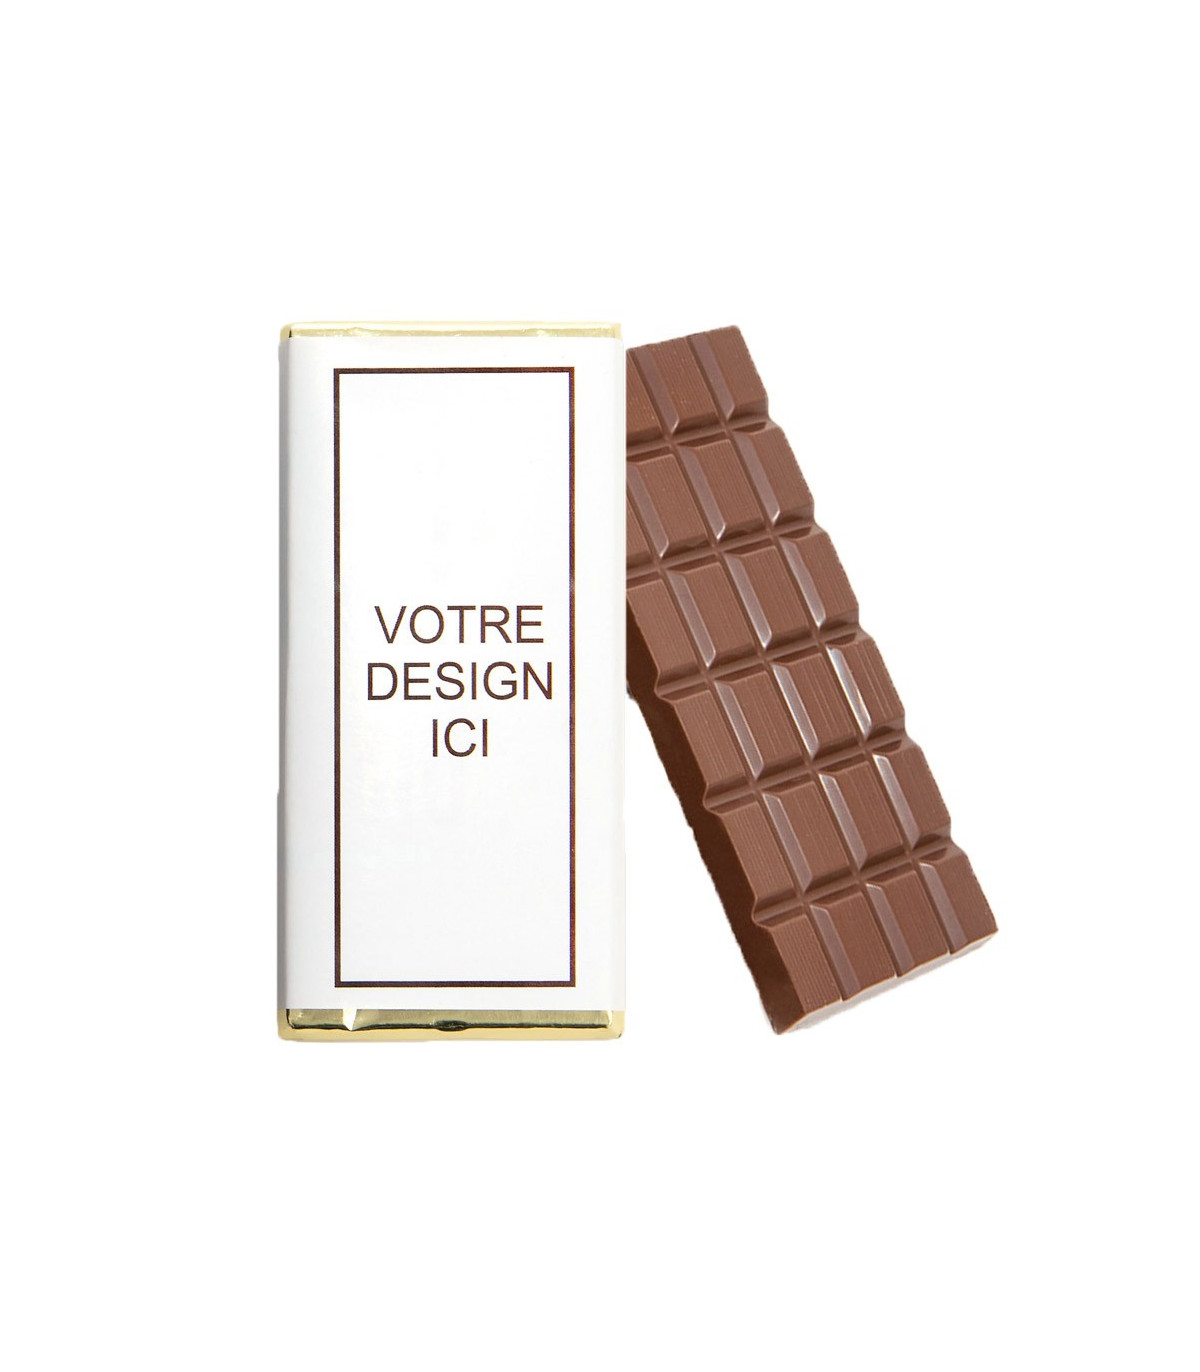 Tablette chocolat personnalisée - Chocolat en ligne D'lys couleurs